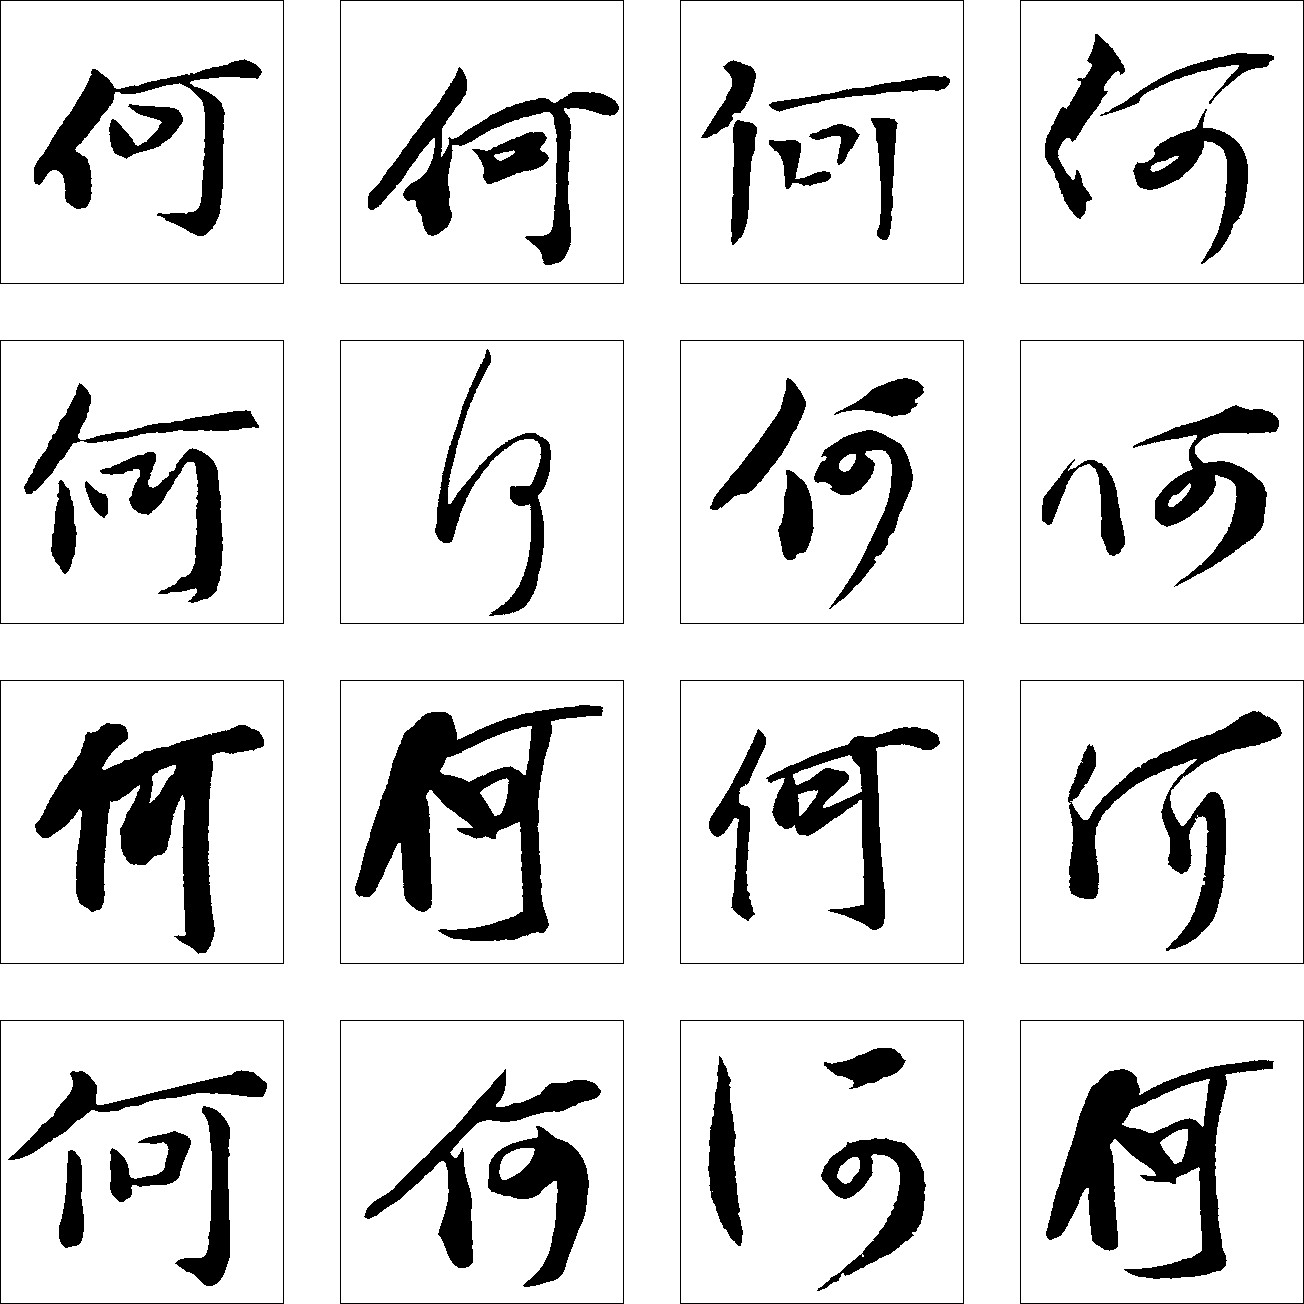 何- 艺术字体_艺术字体设计_字体下载_中国书法字体